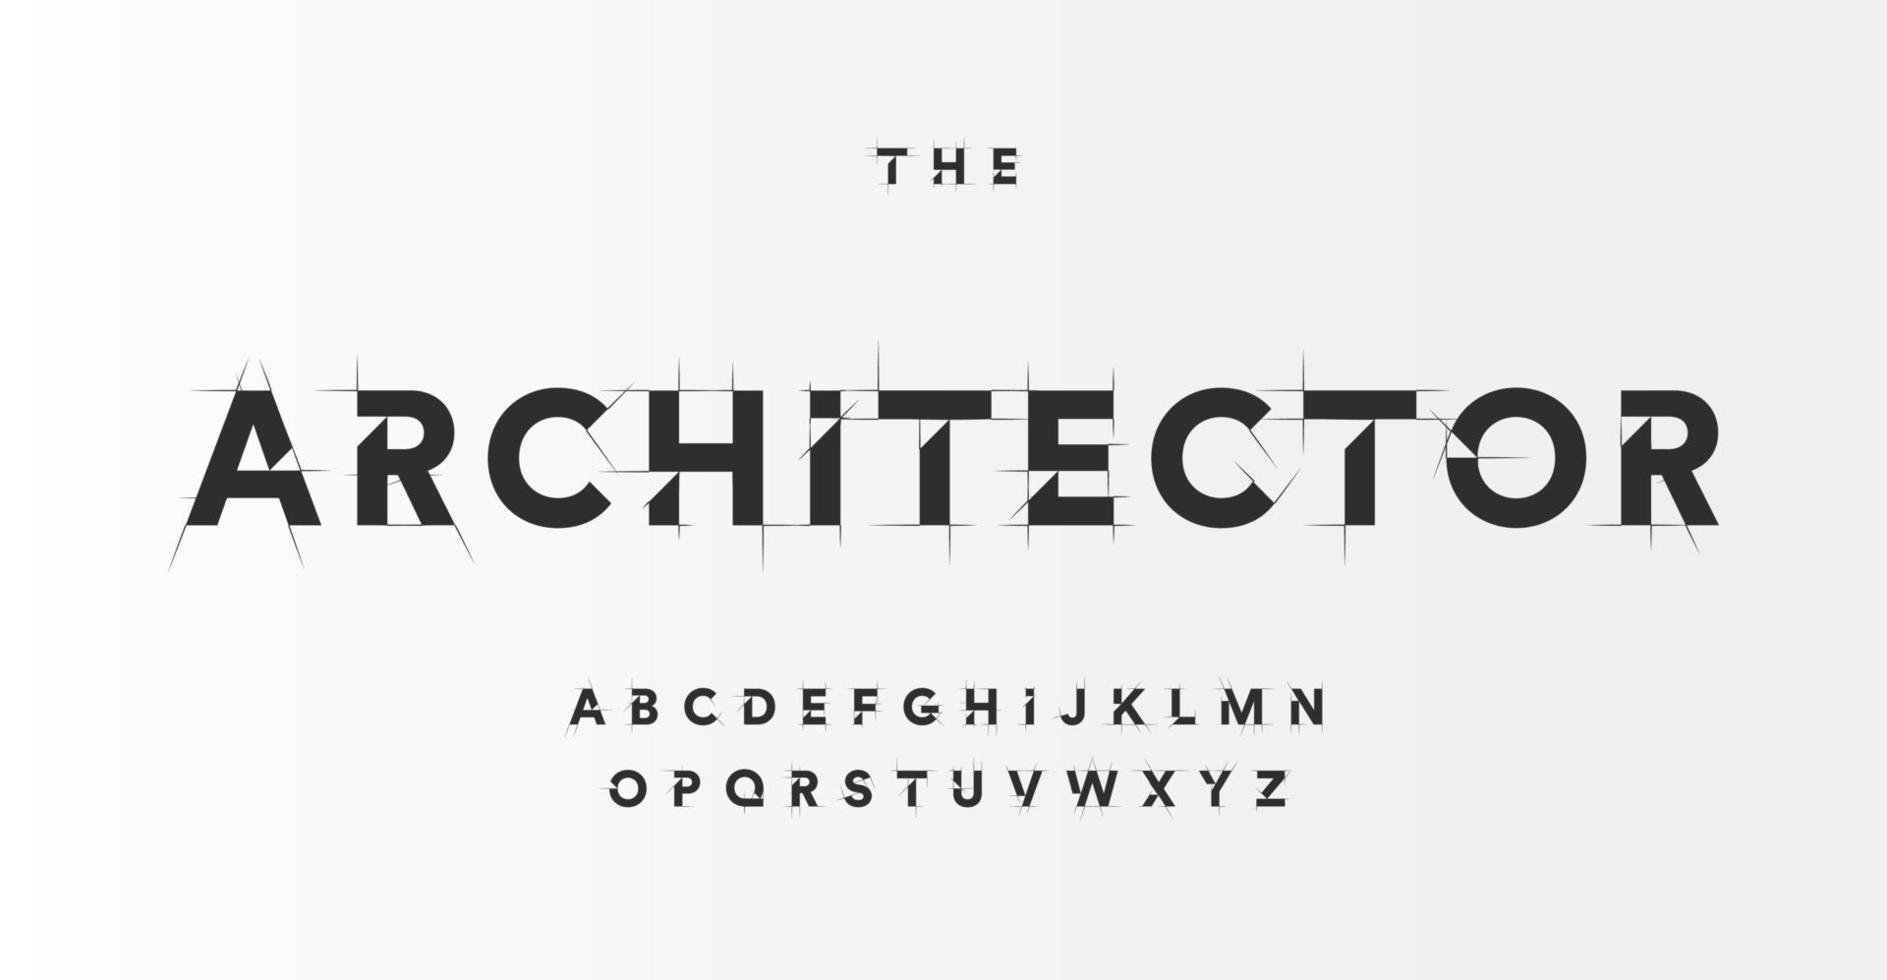 architettonico progetto font, tecnico disegnare stile alfabeto. geometrico tipografia. wireframe lettere, tipografico design con bozza colpi per architettura logo e titolo. isolato vettore comporre.